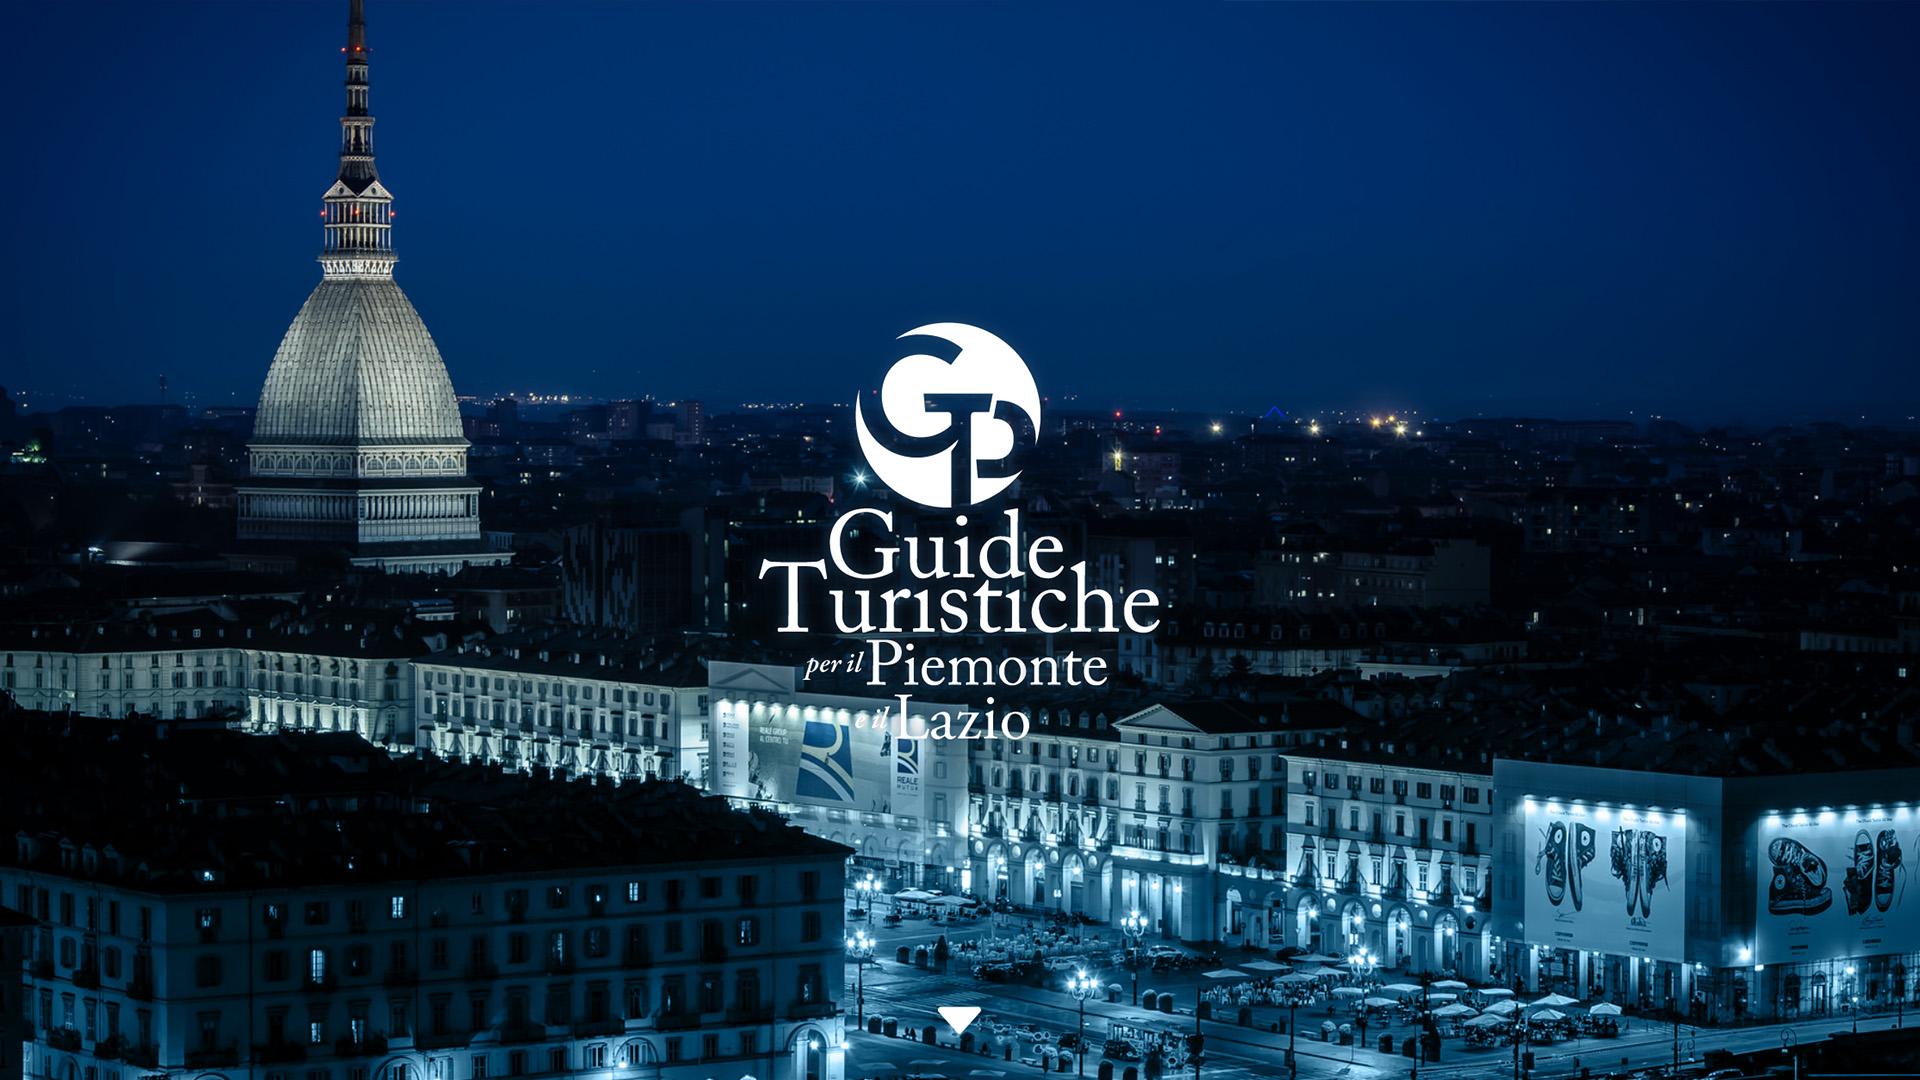 Guide turistiche per il Piemonte e il Lazio